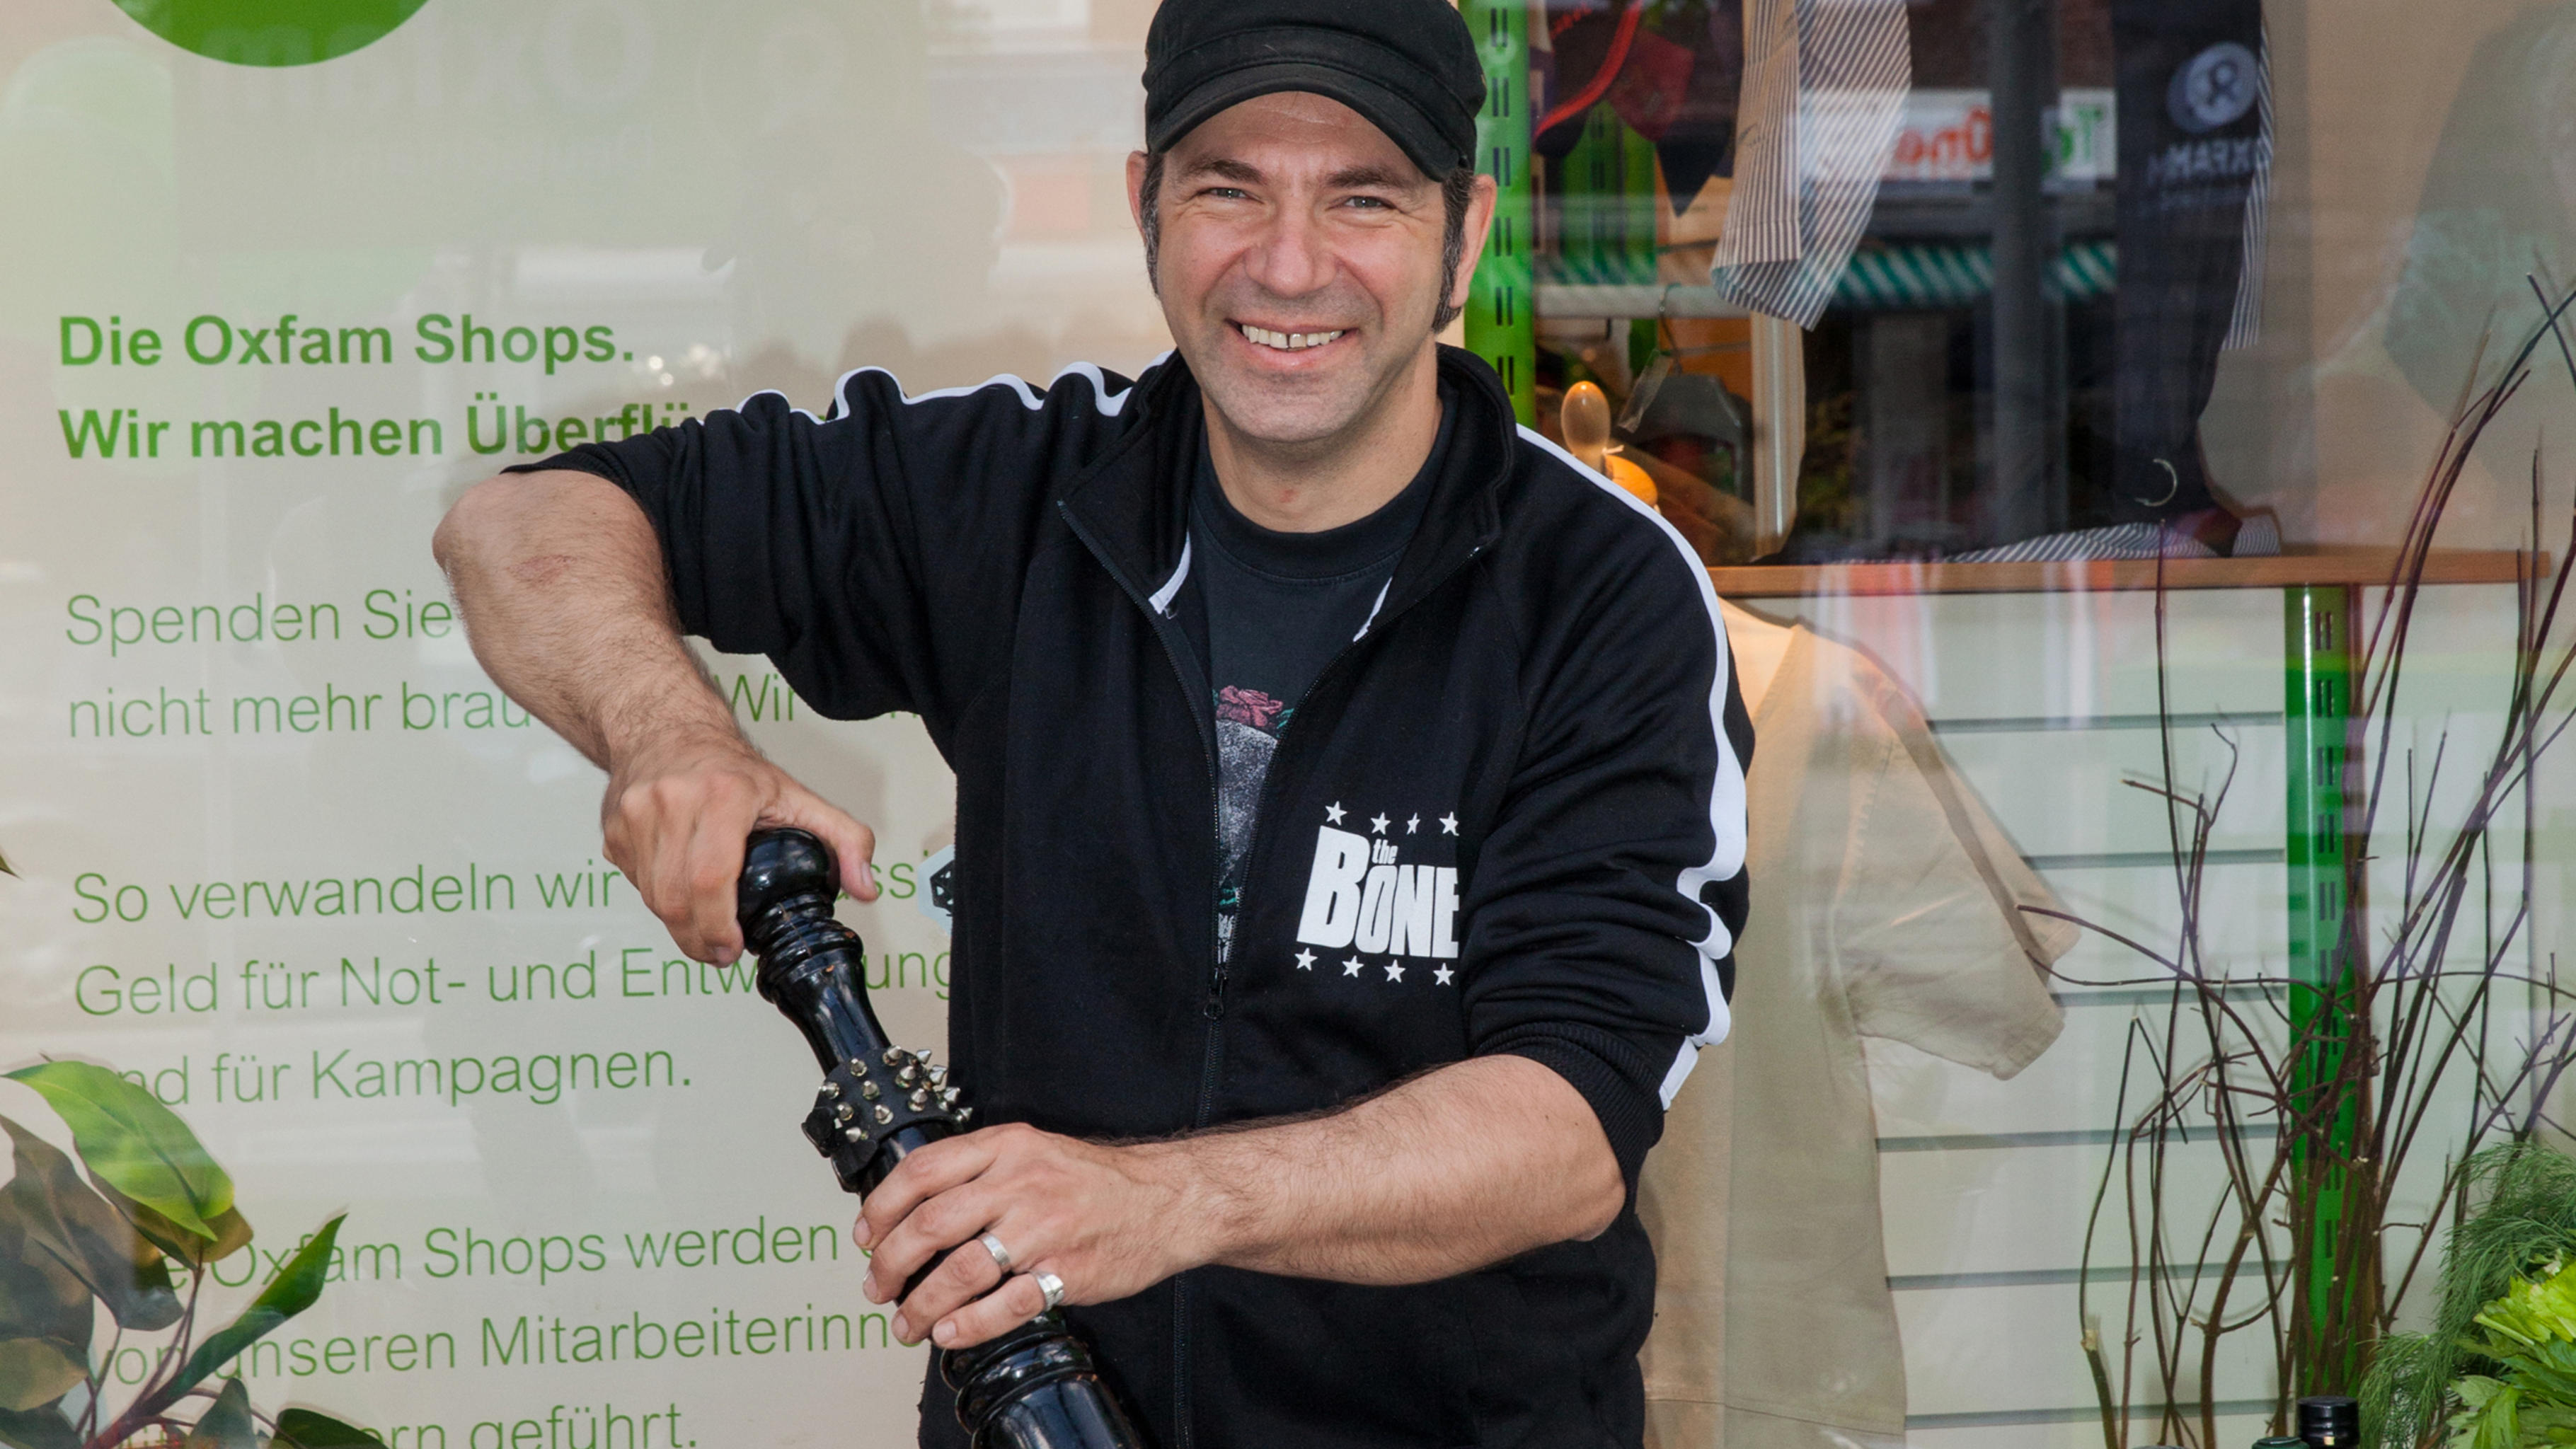 Kochprofi Ole Plogstedt bereitet vor dem Oxfam Shop in Hamburg-Wandsbek ein Honig-Salatdressing aus fair gehandelten Zutaten zu.